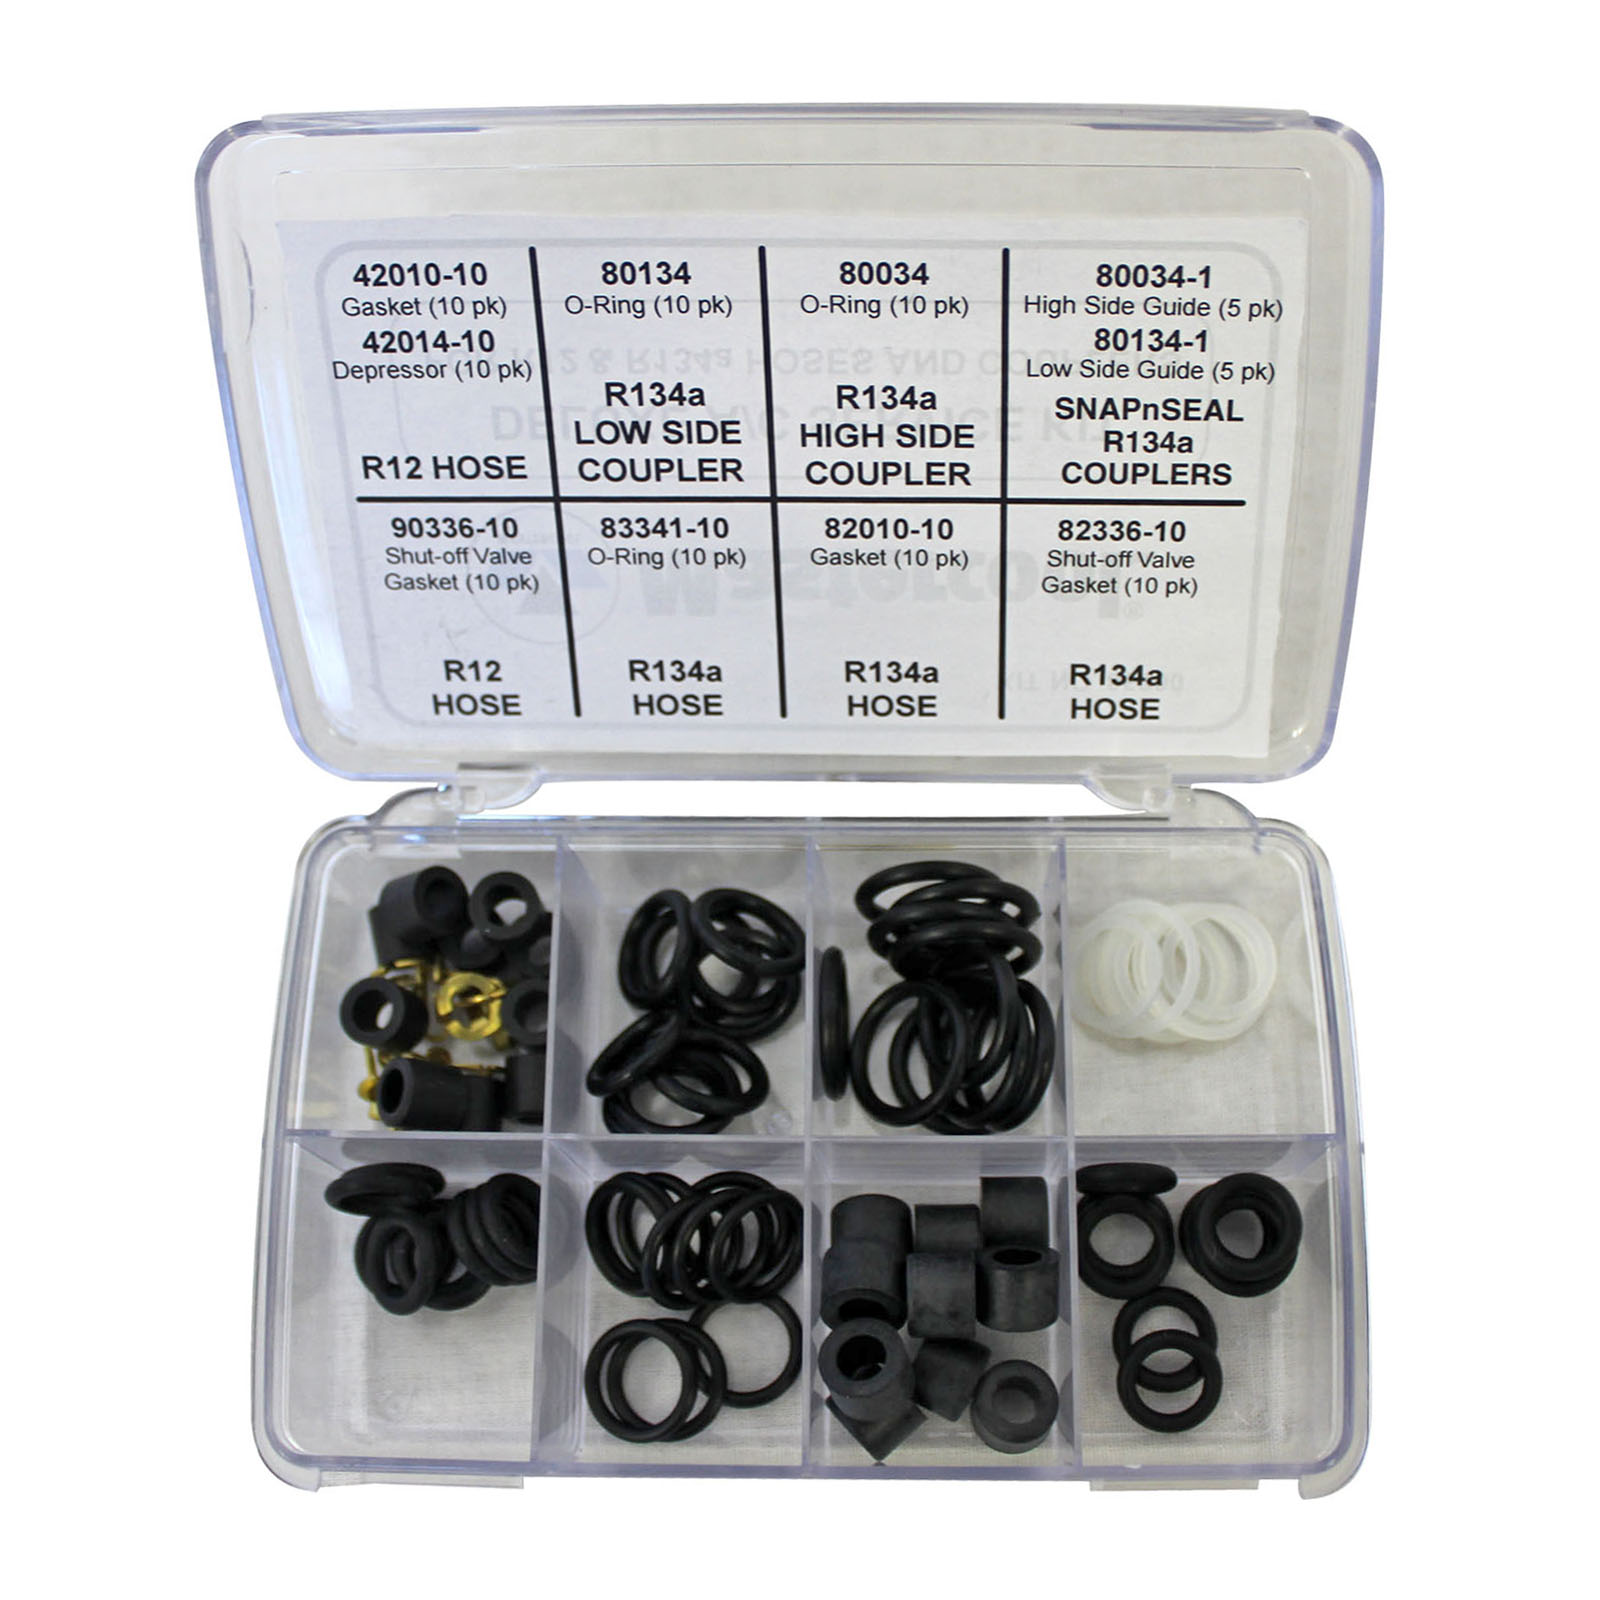 Mastercool 91207 Charging Adapter Depressor Kit 